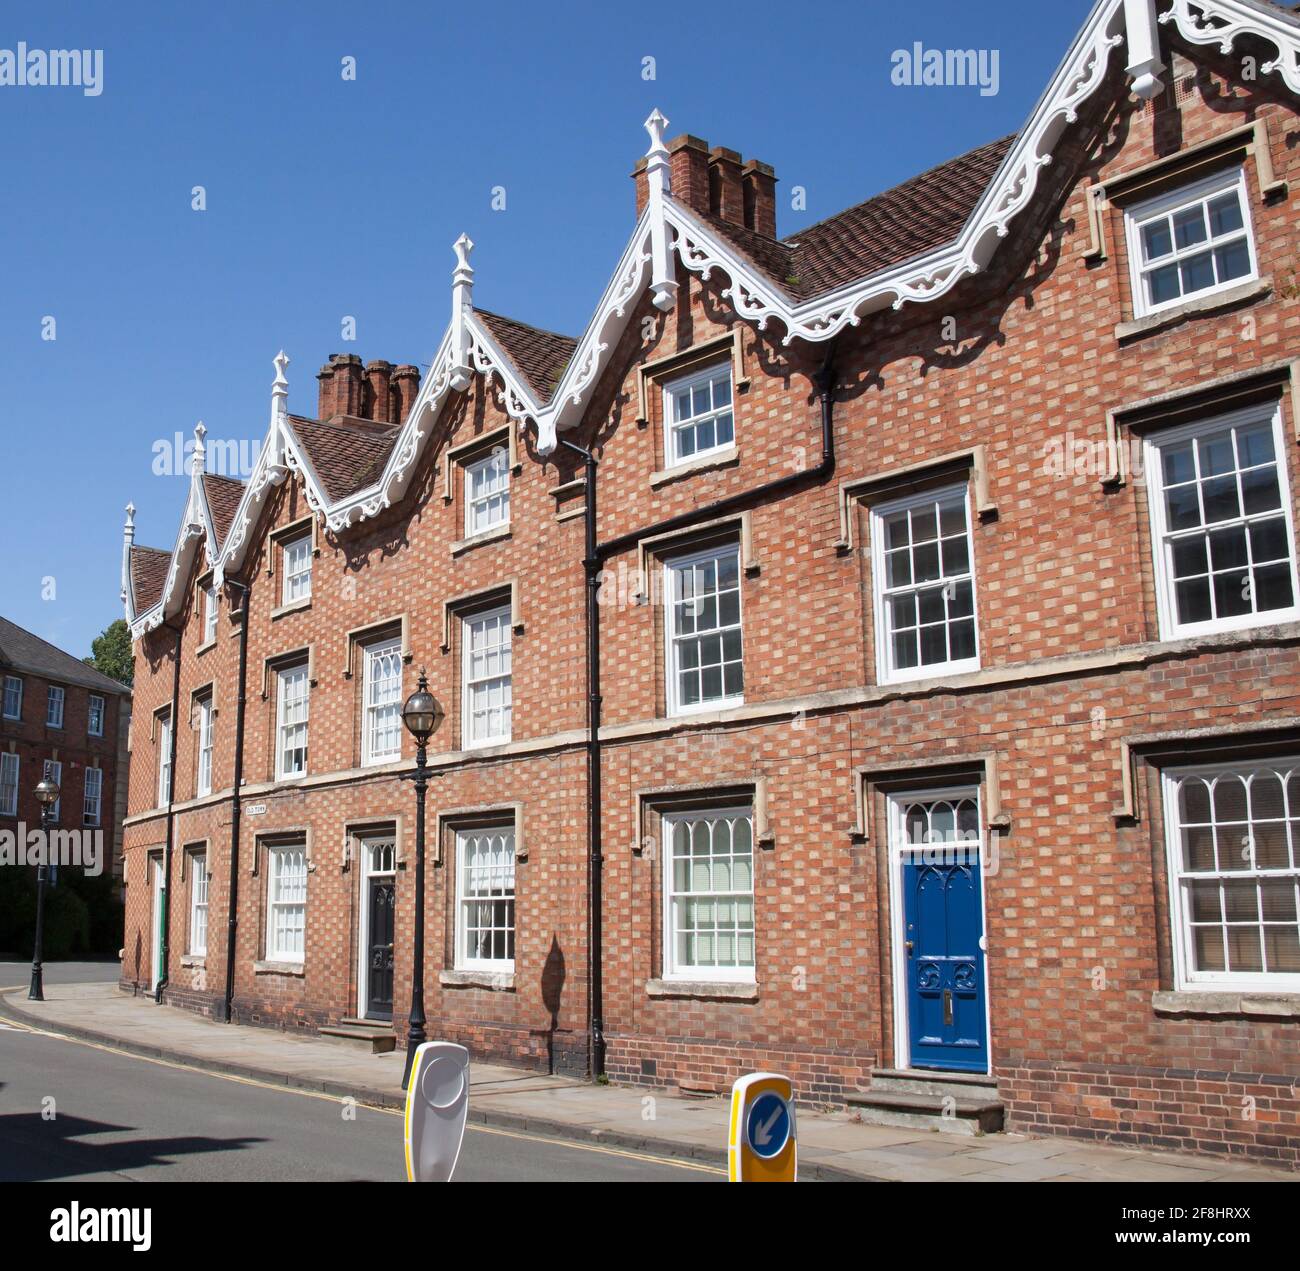 Vecchi edifici in mattoni rossi nella città vecchia di Stratford Upon Avon nel Warwickshire nel Regno Unito, presi il 22 giugno 2020 Foto Stock